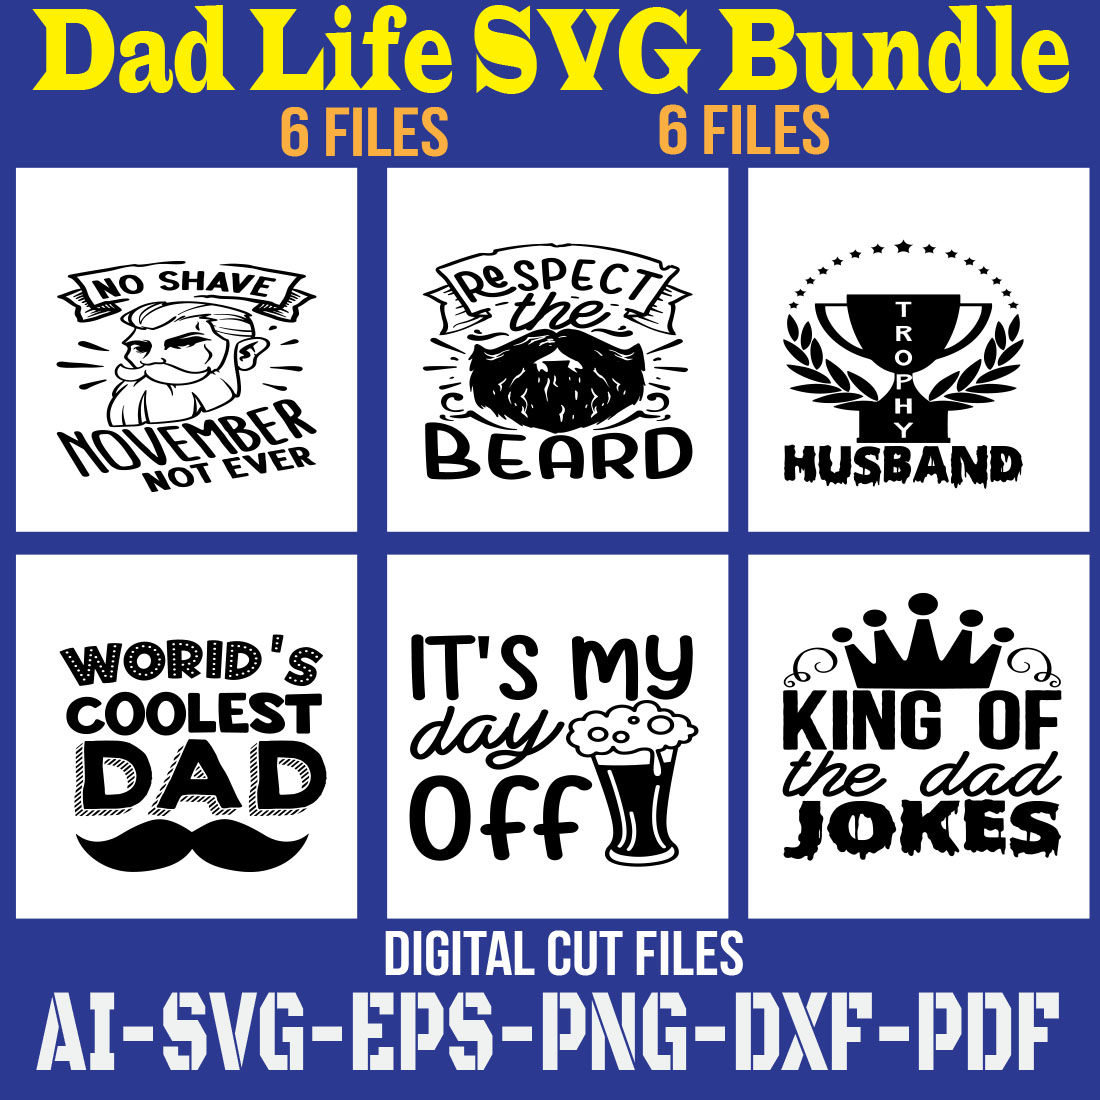 Dad Life SVG Bundle cover image.